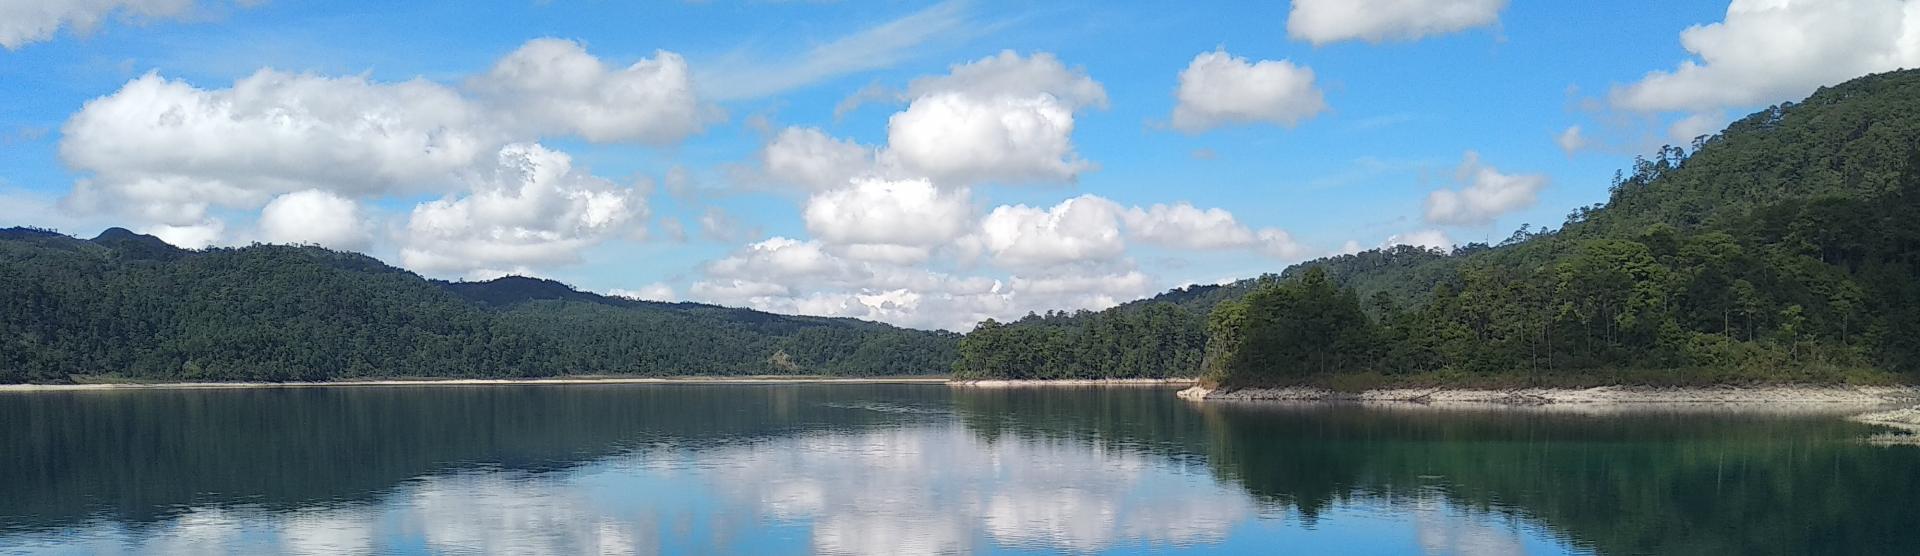 Montebello Lakes (Chiapas, Mexico)